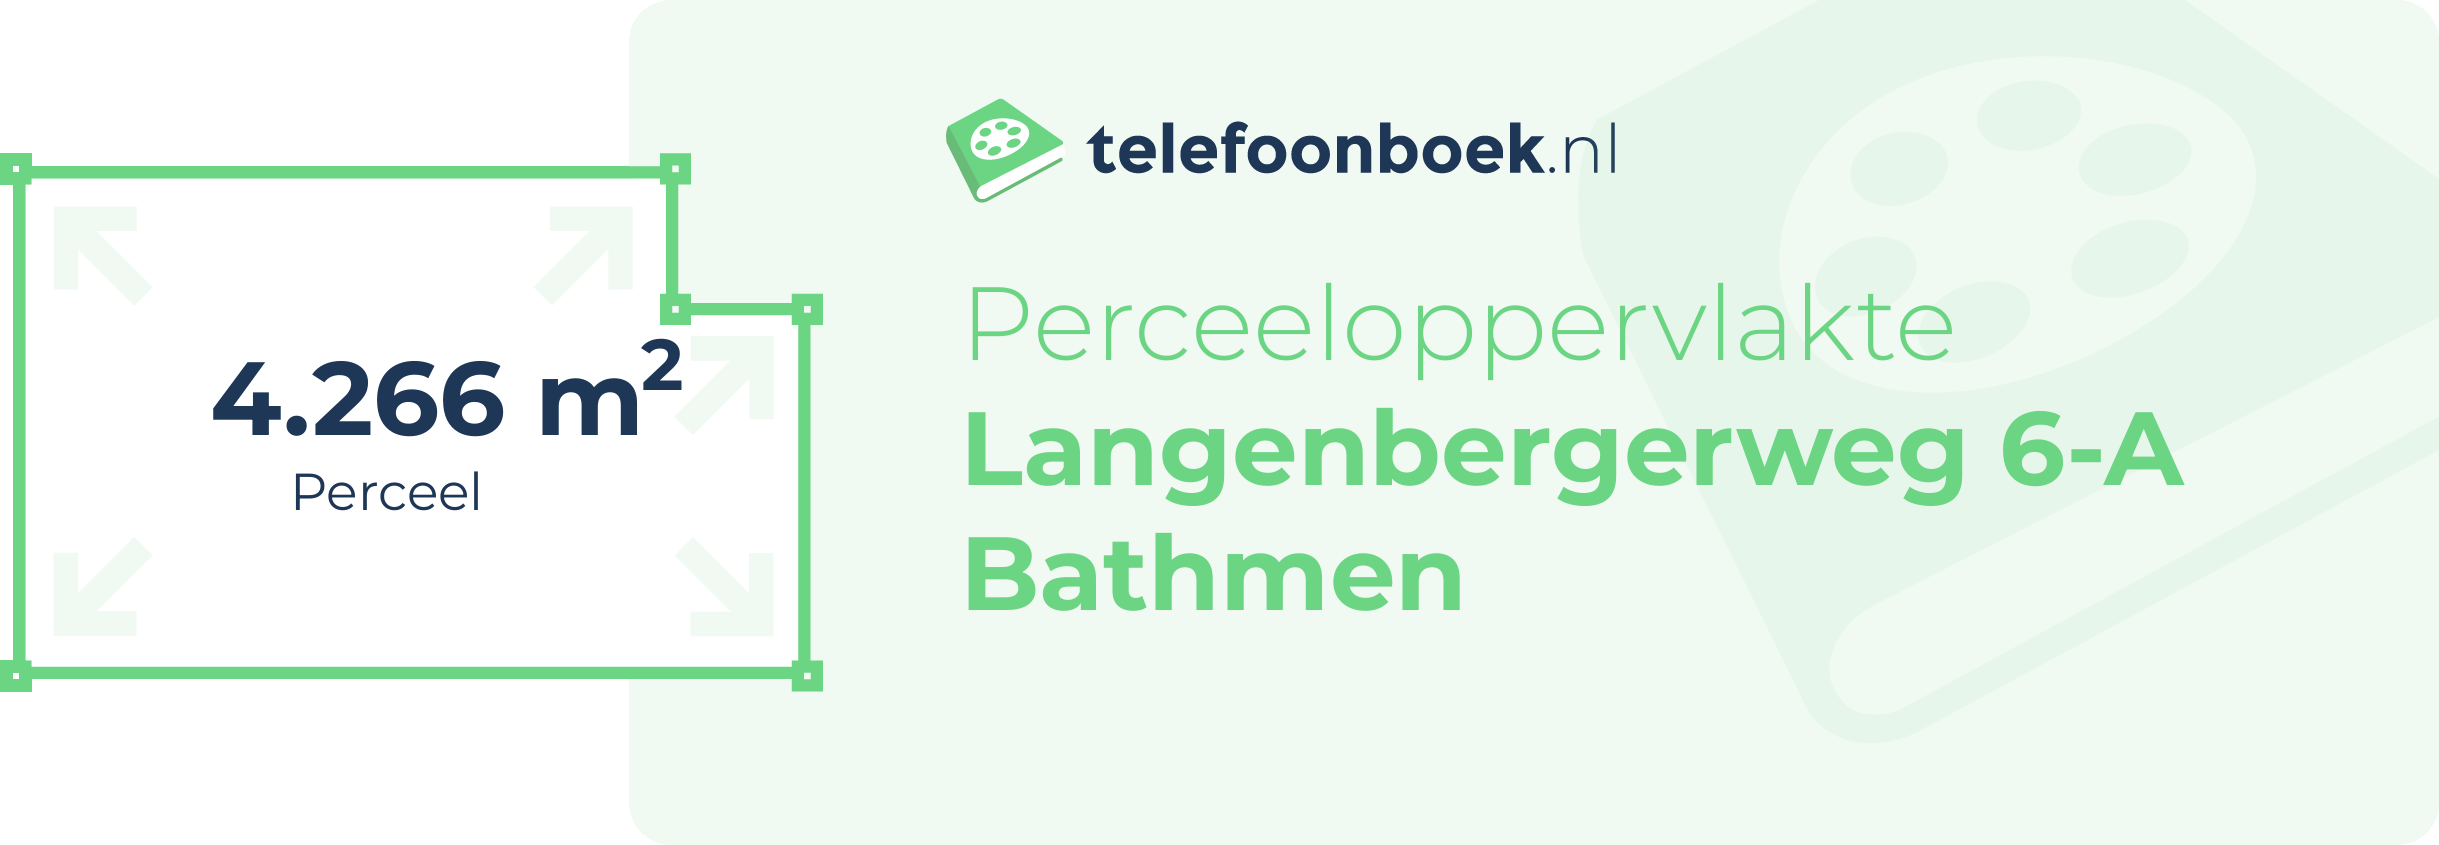 Perceeloppervlakte Langenbergerweg 6-A Bathmen